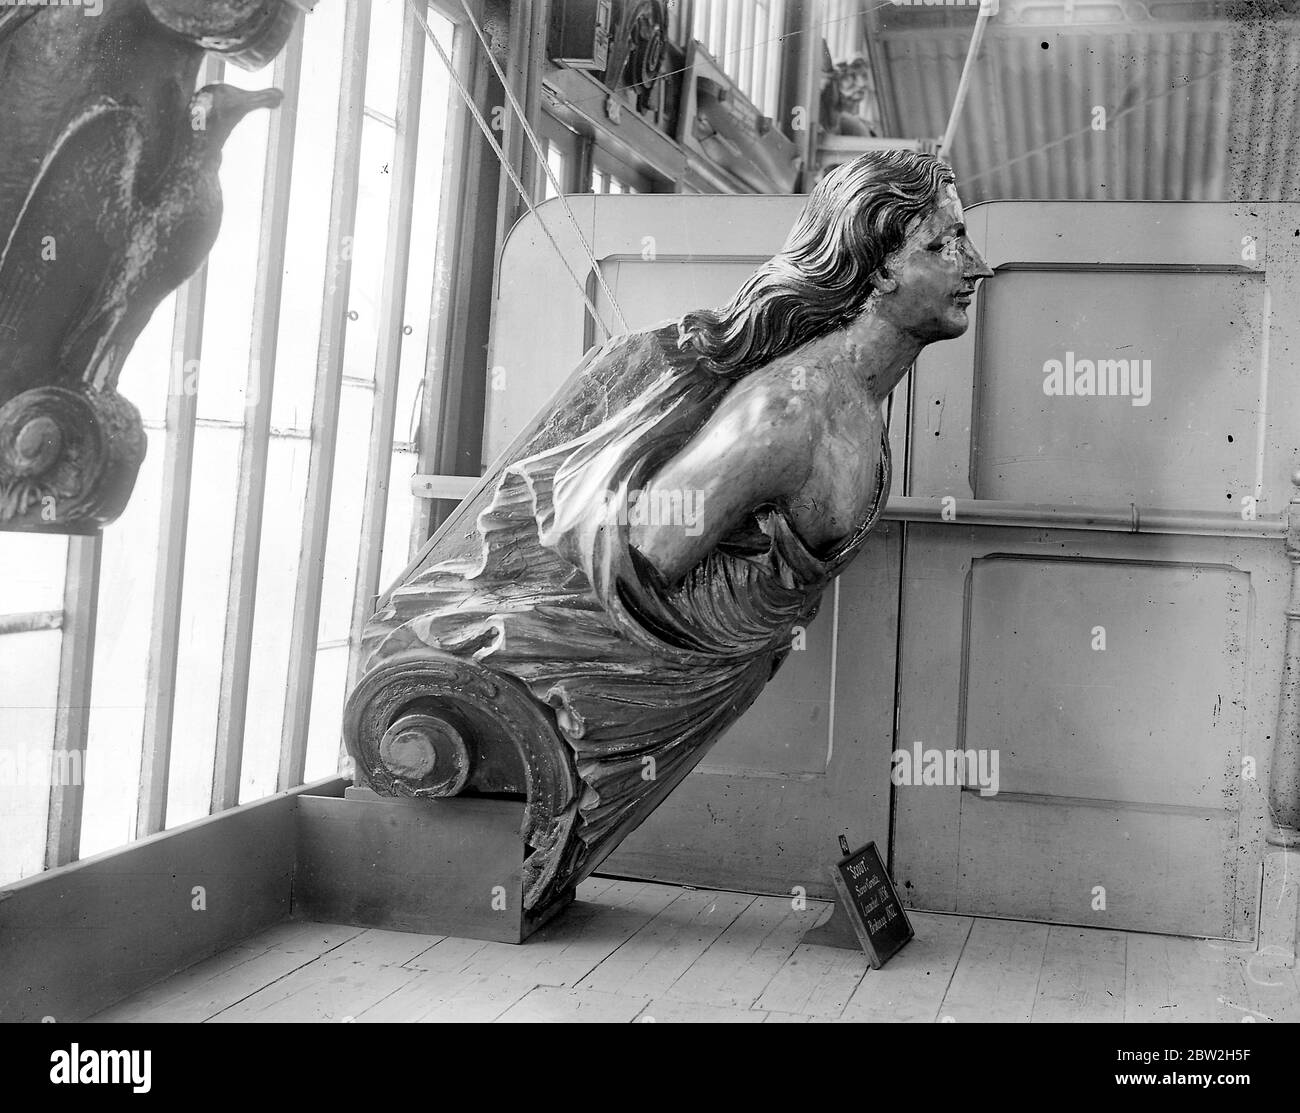 Tête de figure femelle de H.M.S Scout. 5 pieds de pied et dix pouces de hauteur (5' 10 de hauteur) Scout a été lancé en 1856 et décomposé en 1877. Au musée naval de Chatham au moment où la photo a été prise. Banque D'Images